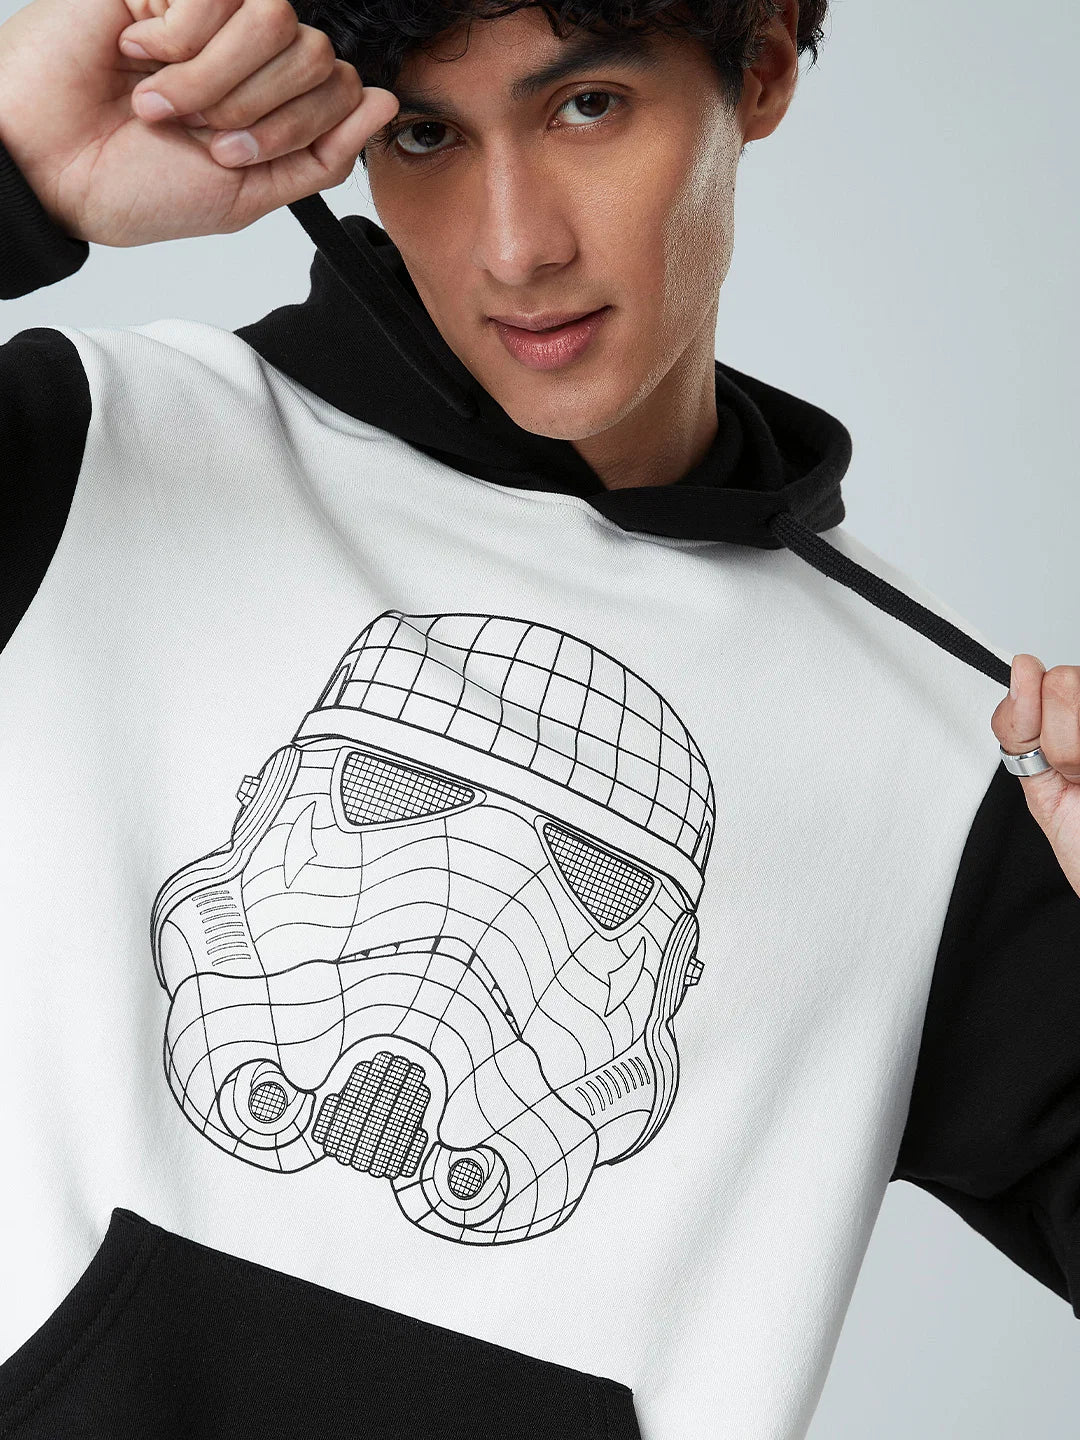 Star Wars Stormtrooper's Helmet (UK version)